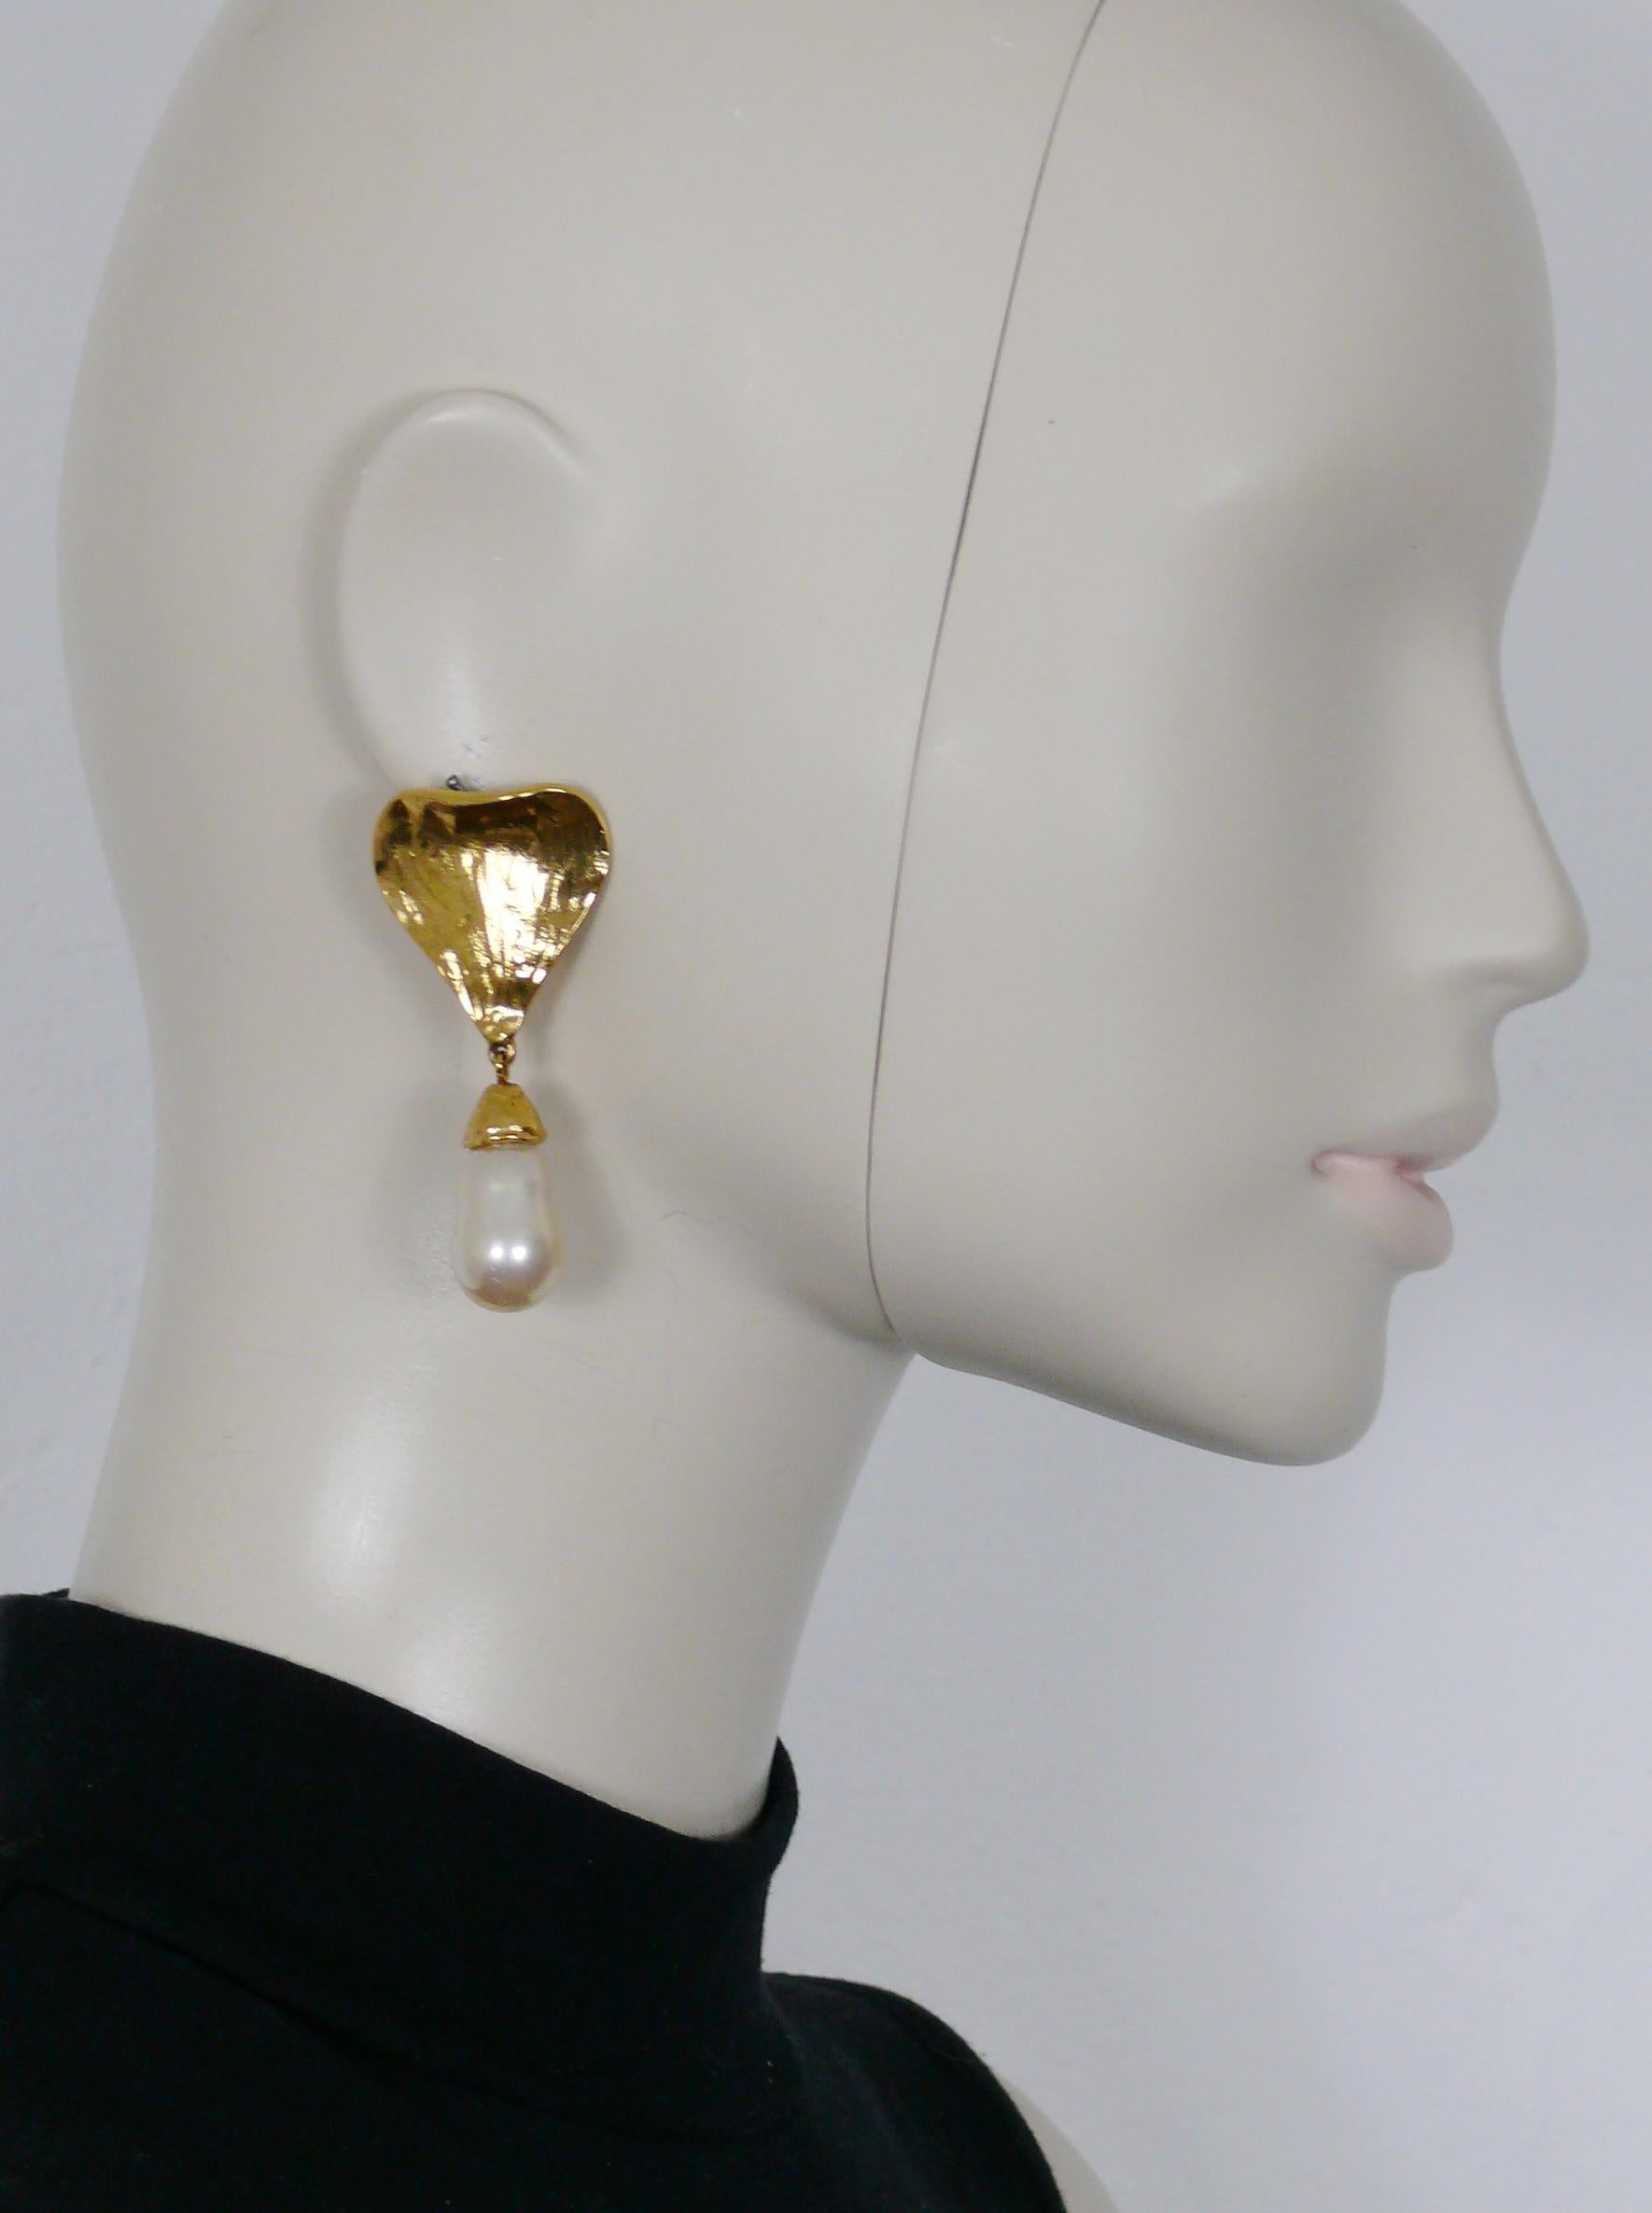 YVES SAINT LAURENT Vintage strukturierte goldfarbene, baumelnde Ohrringe (aufklappbar) mit einem Kunstperlentropfen verziert.

Geprägtes YSL Hergestellt in Frankreich.

Indicative Abmessungen: max. Höhe ca. 6 cm (2,36 Zoll) / max. Breite ca. 2,8 cm